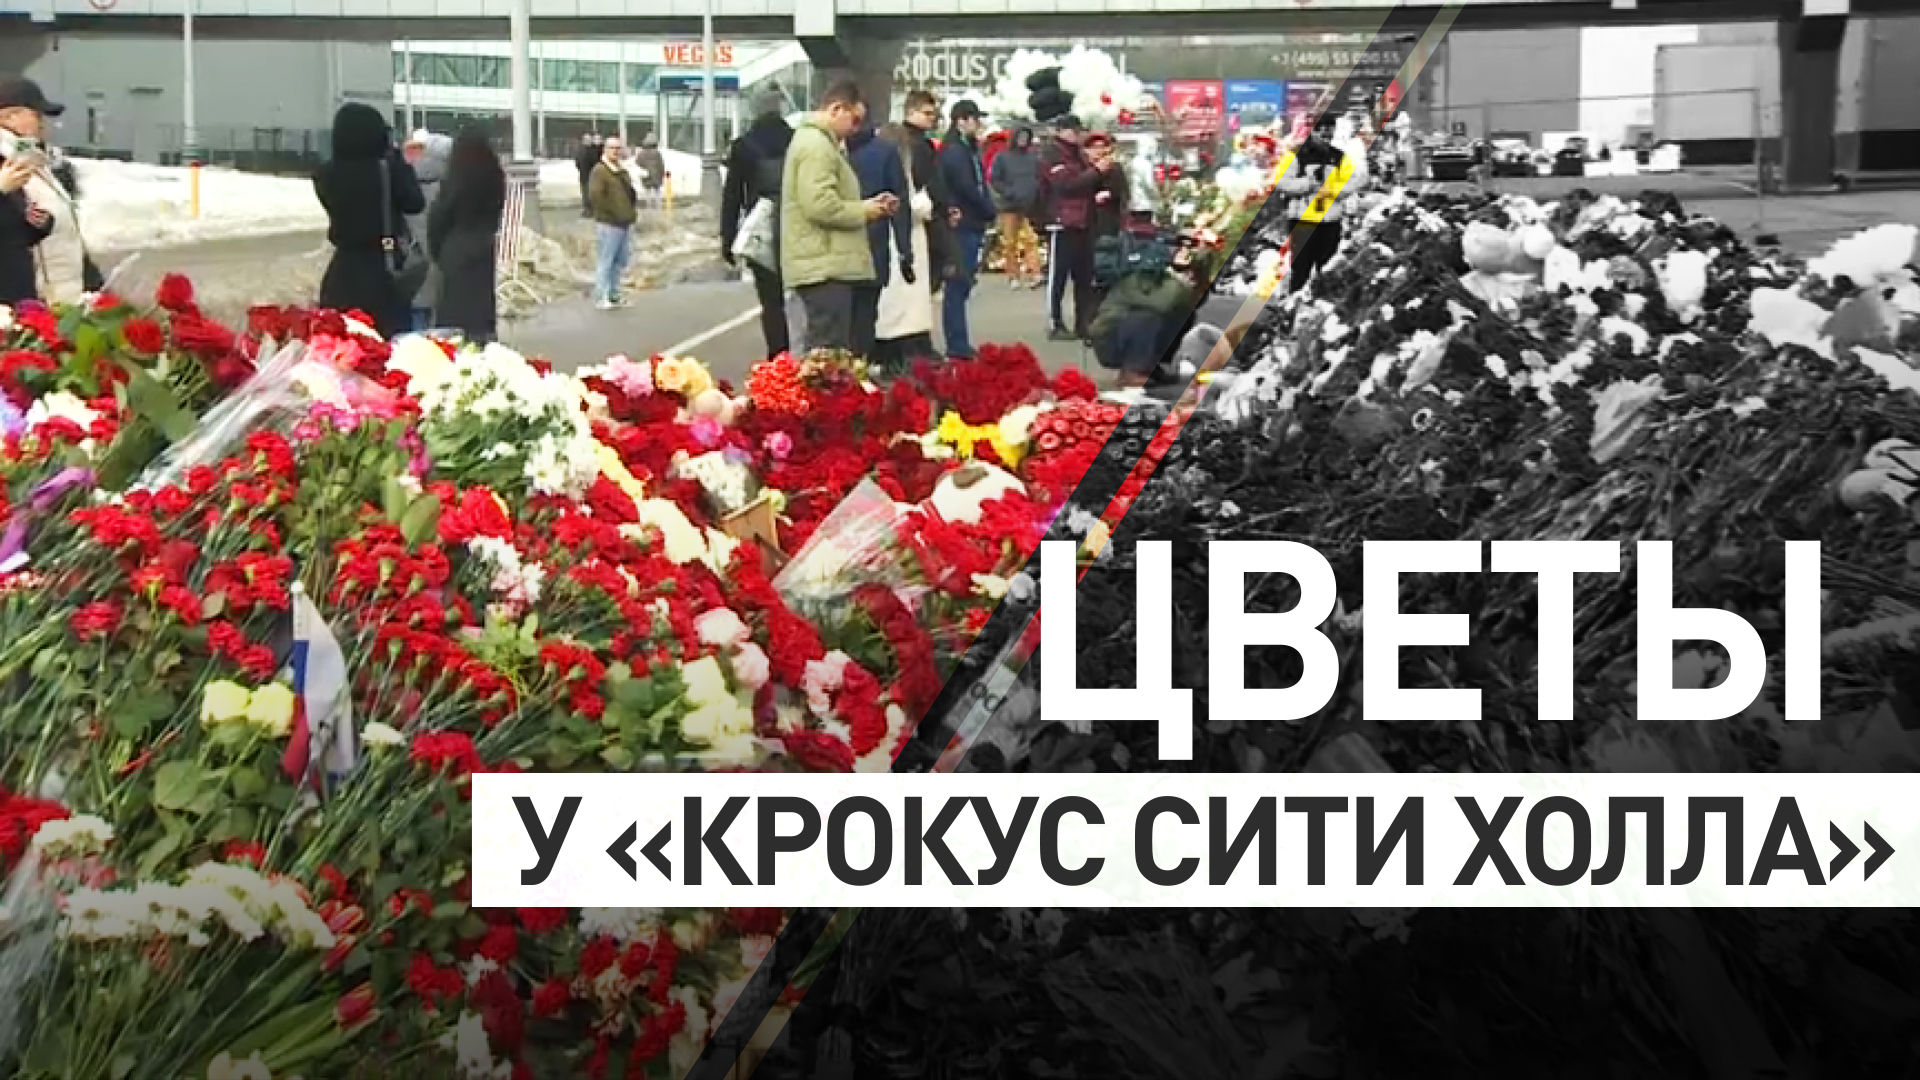 В память о погибших: москвичи и гости столицы несут цветы к «Крокусу»